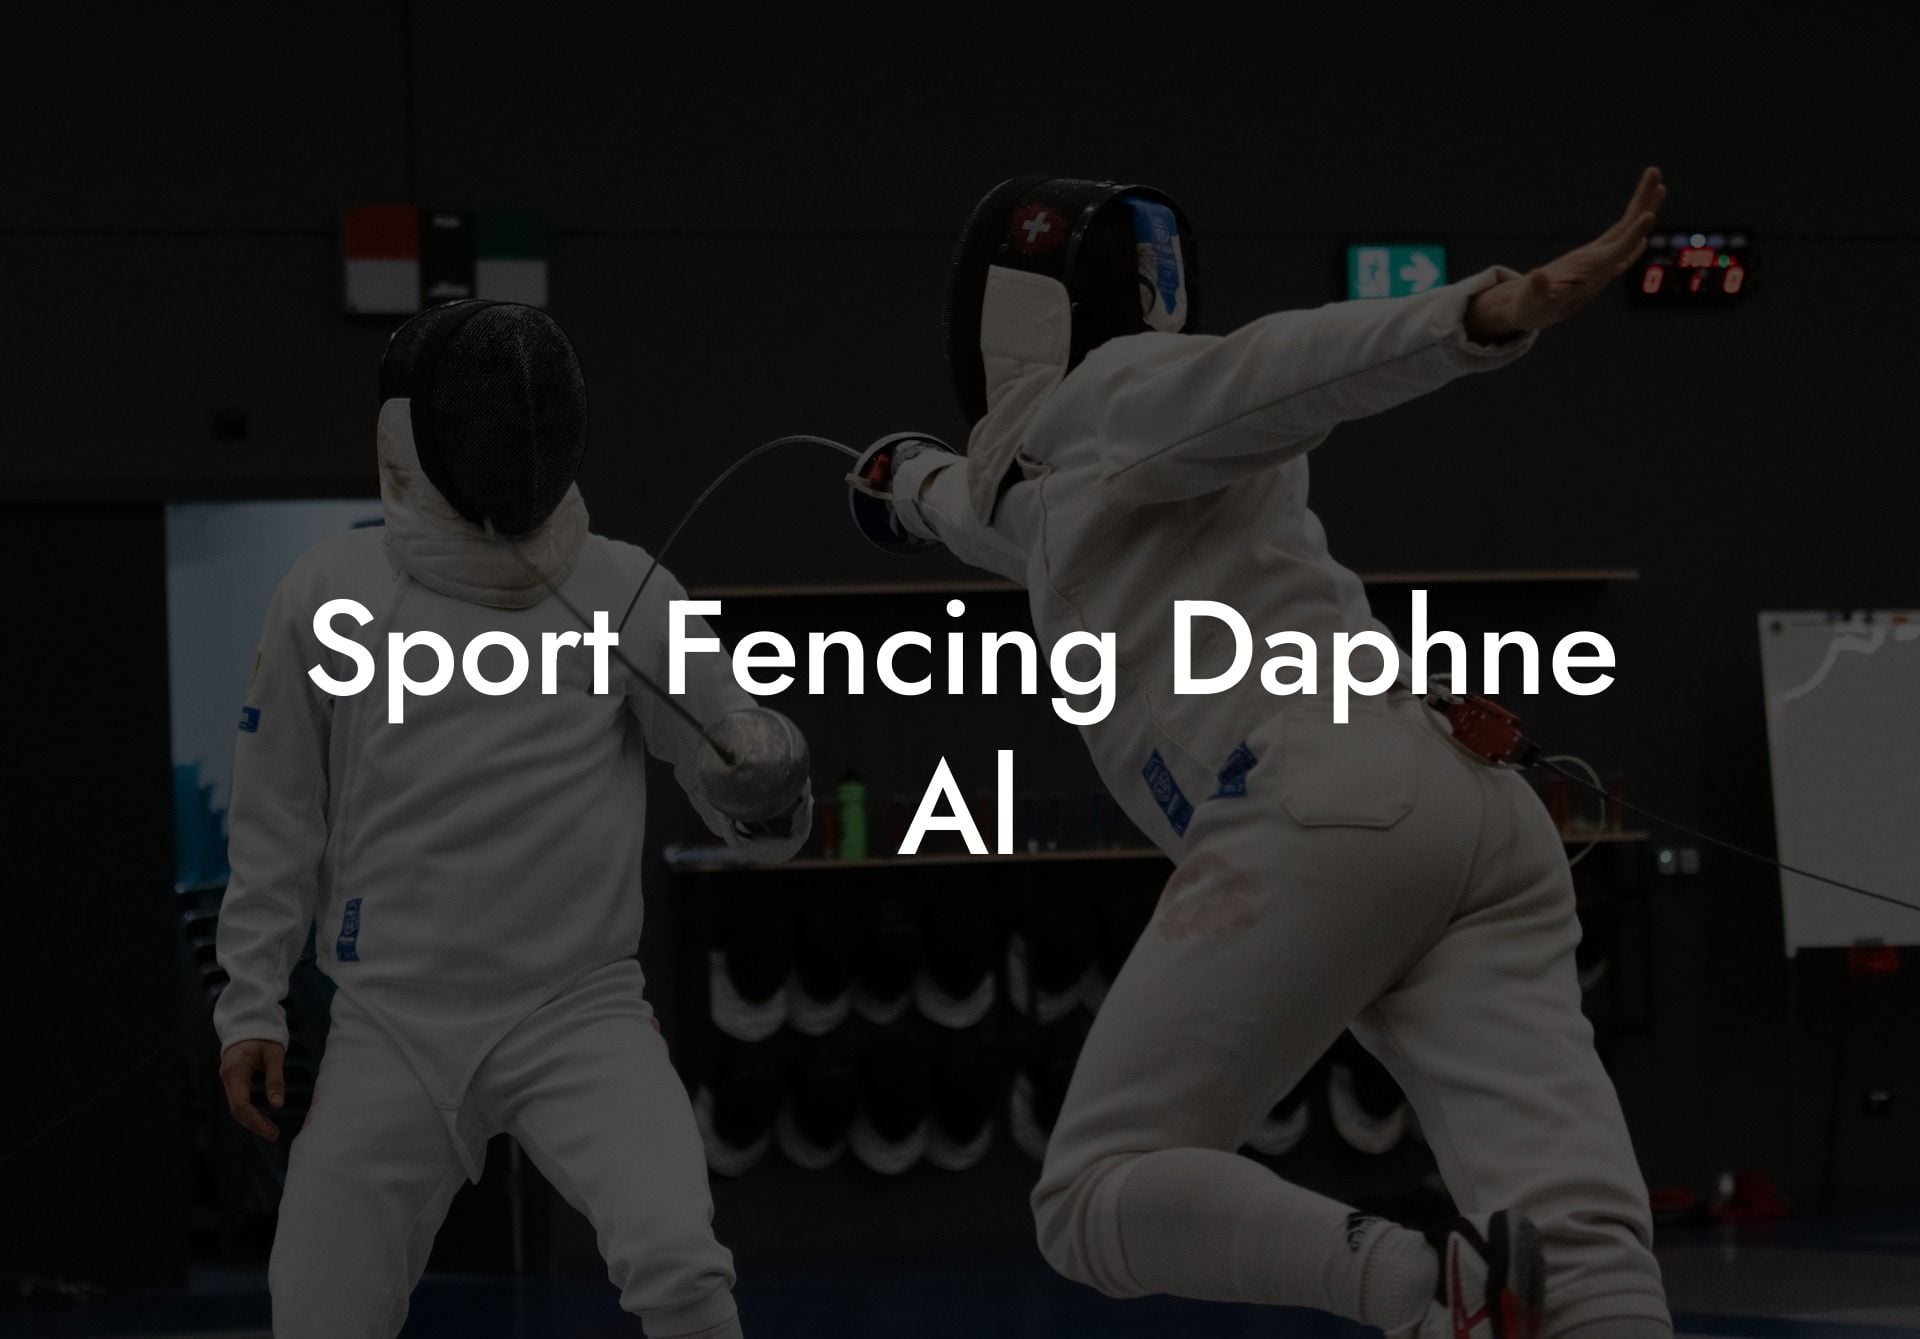 Sport Fencing Daphne Al